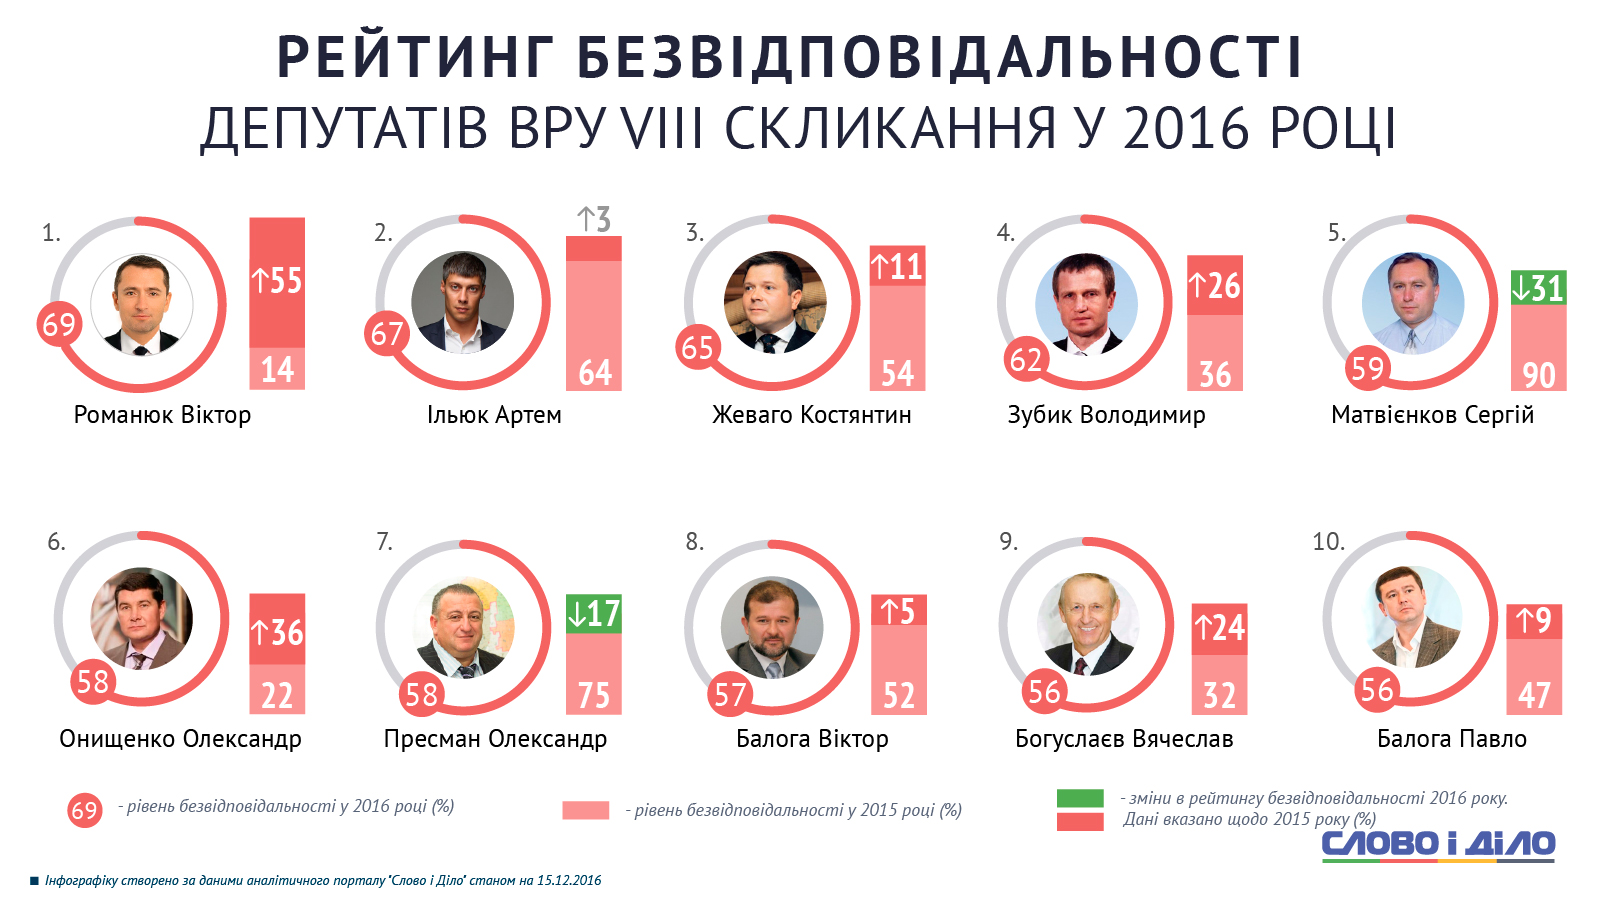 Рейтинг народных депутатов